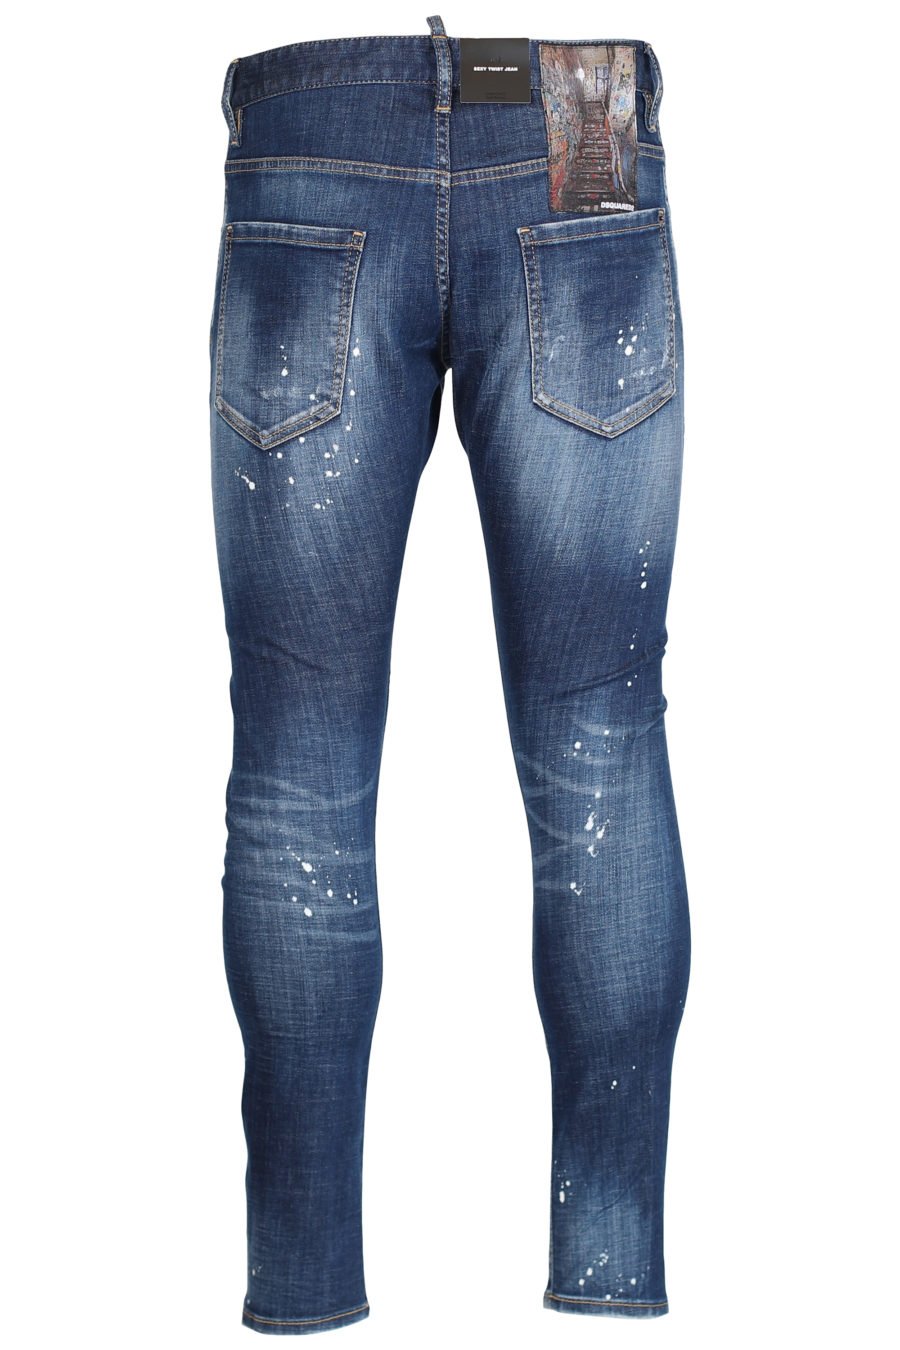 Jeans "Sexy twist jean" bleu avec fermeture éclair - IMG 2451